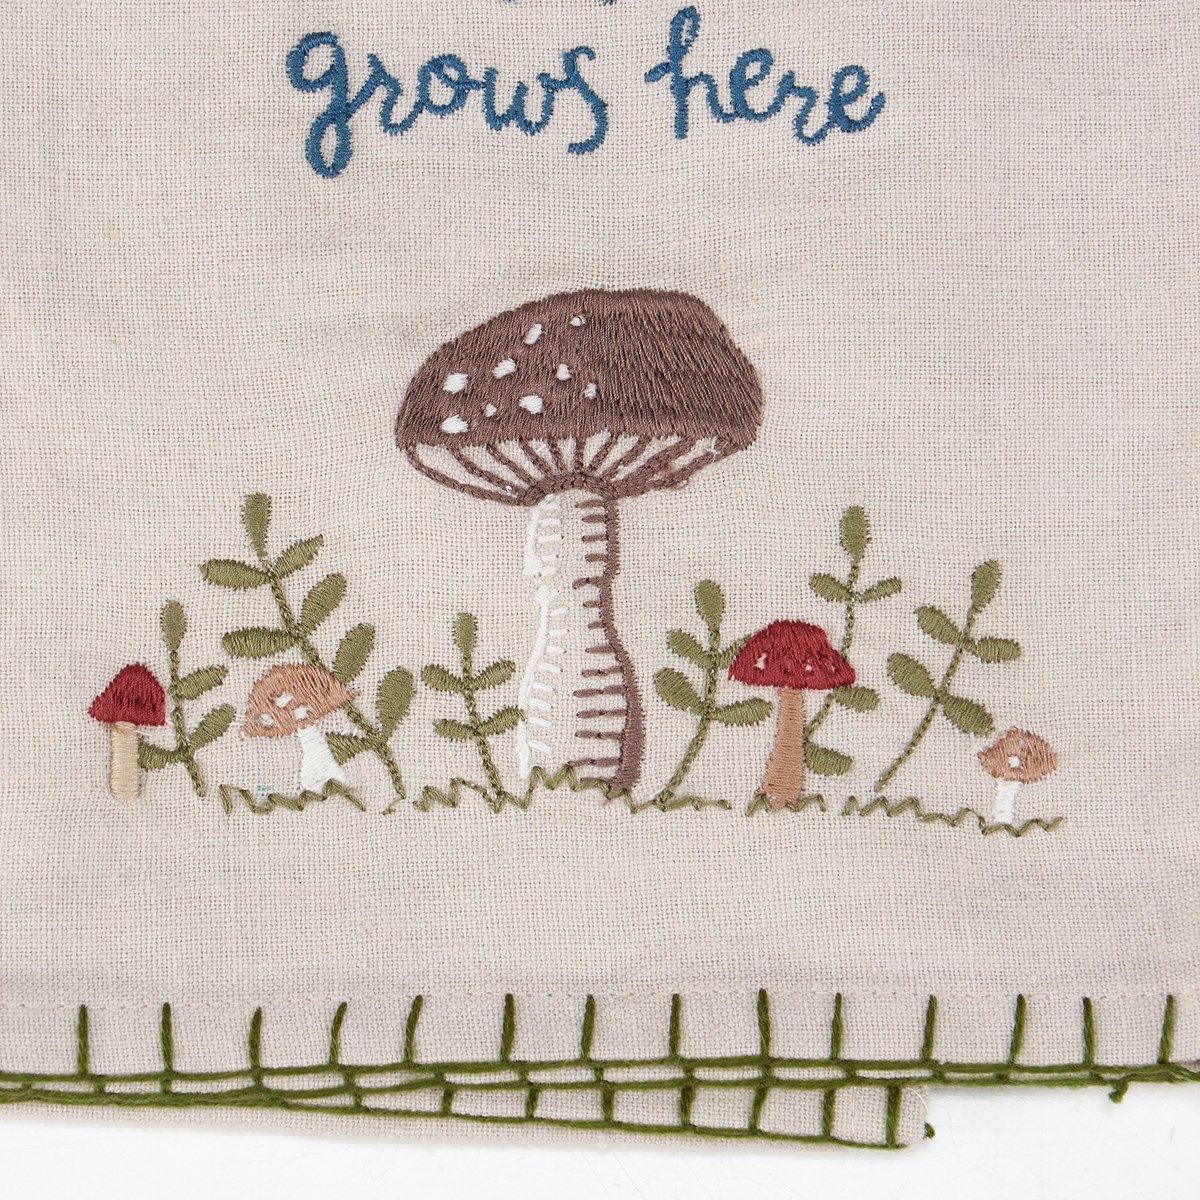 Love Grows Kitchen Towel - Cotton, Linen